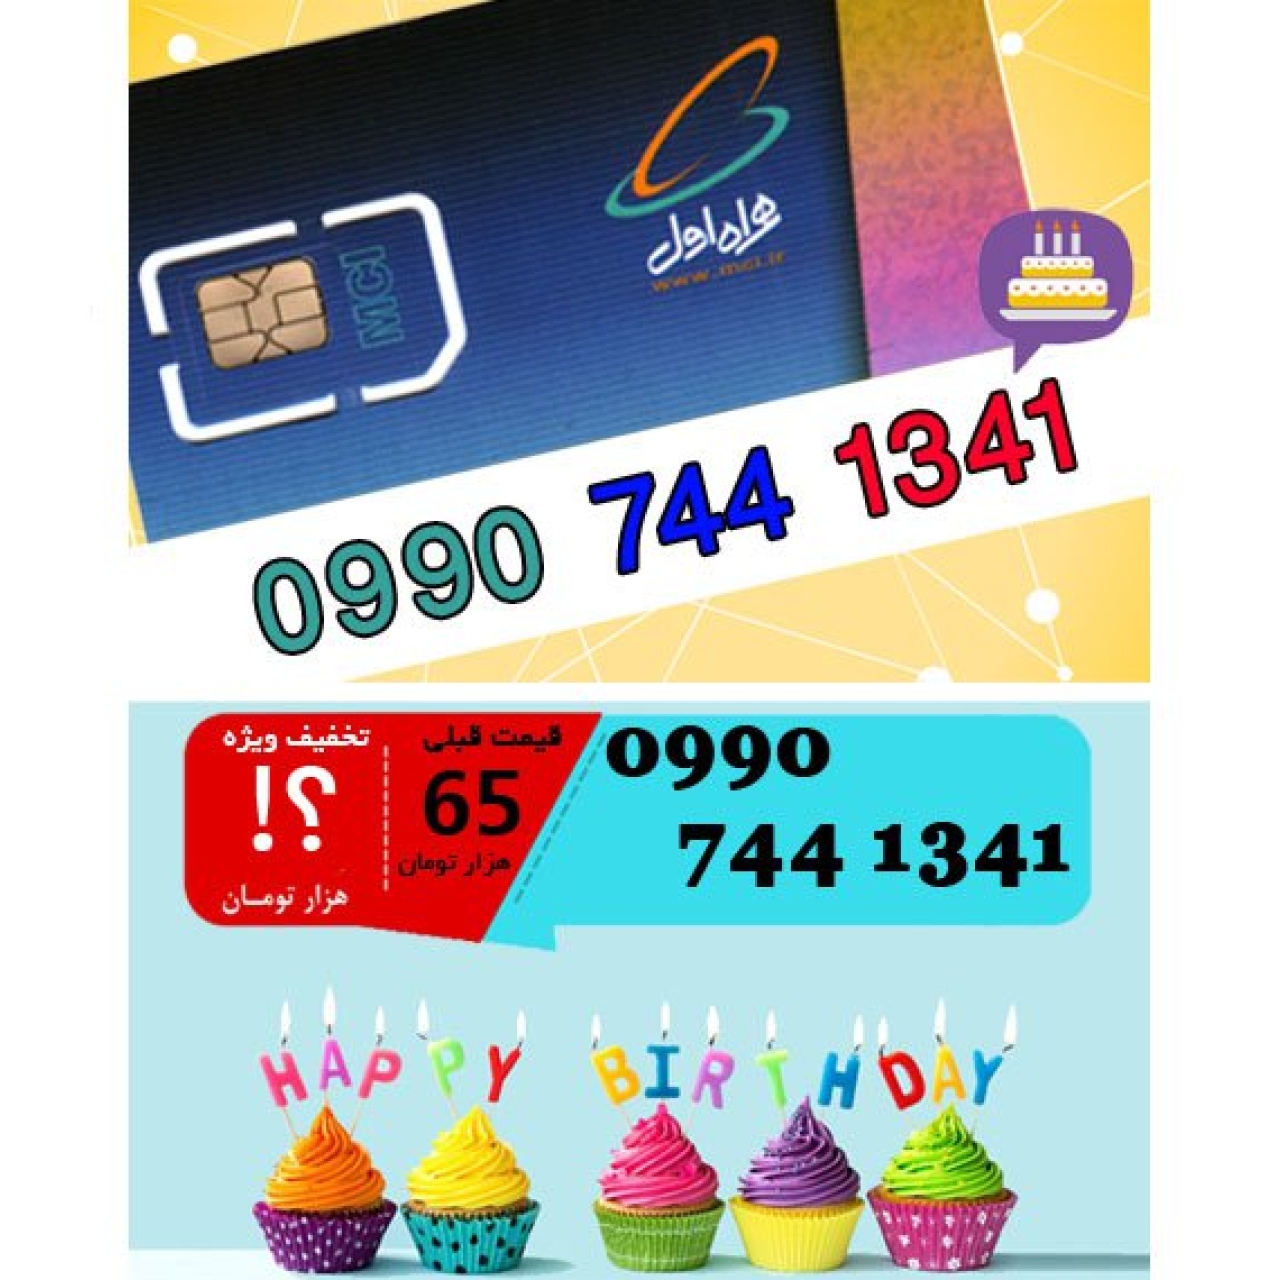 سیم کارت اعتباری همراه اول 09907441341 تاریخ تولد